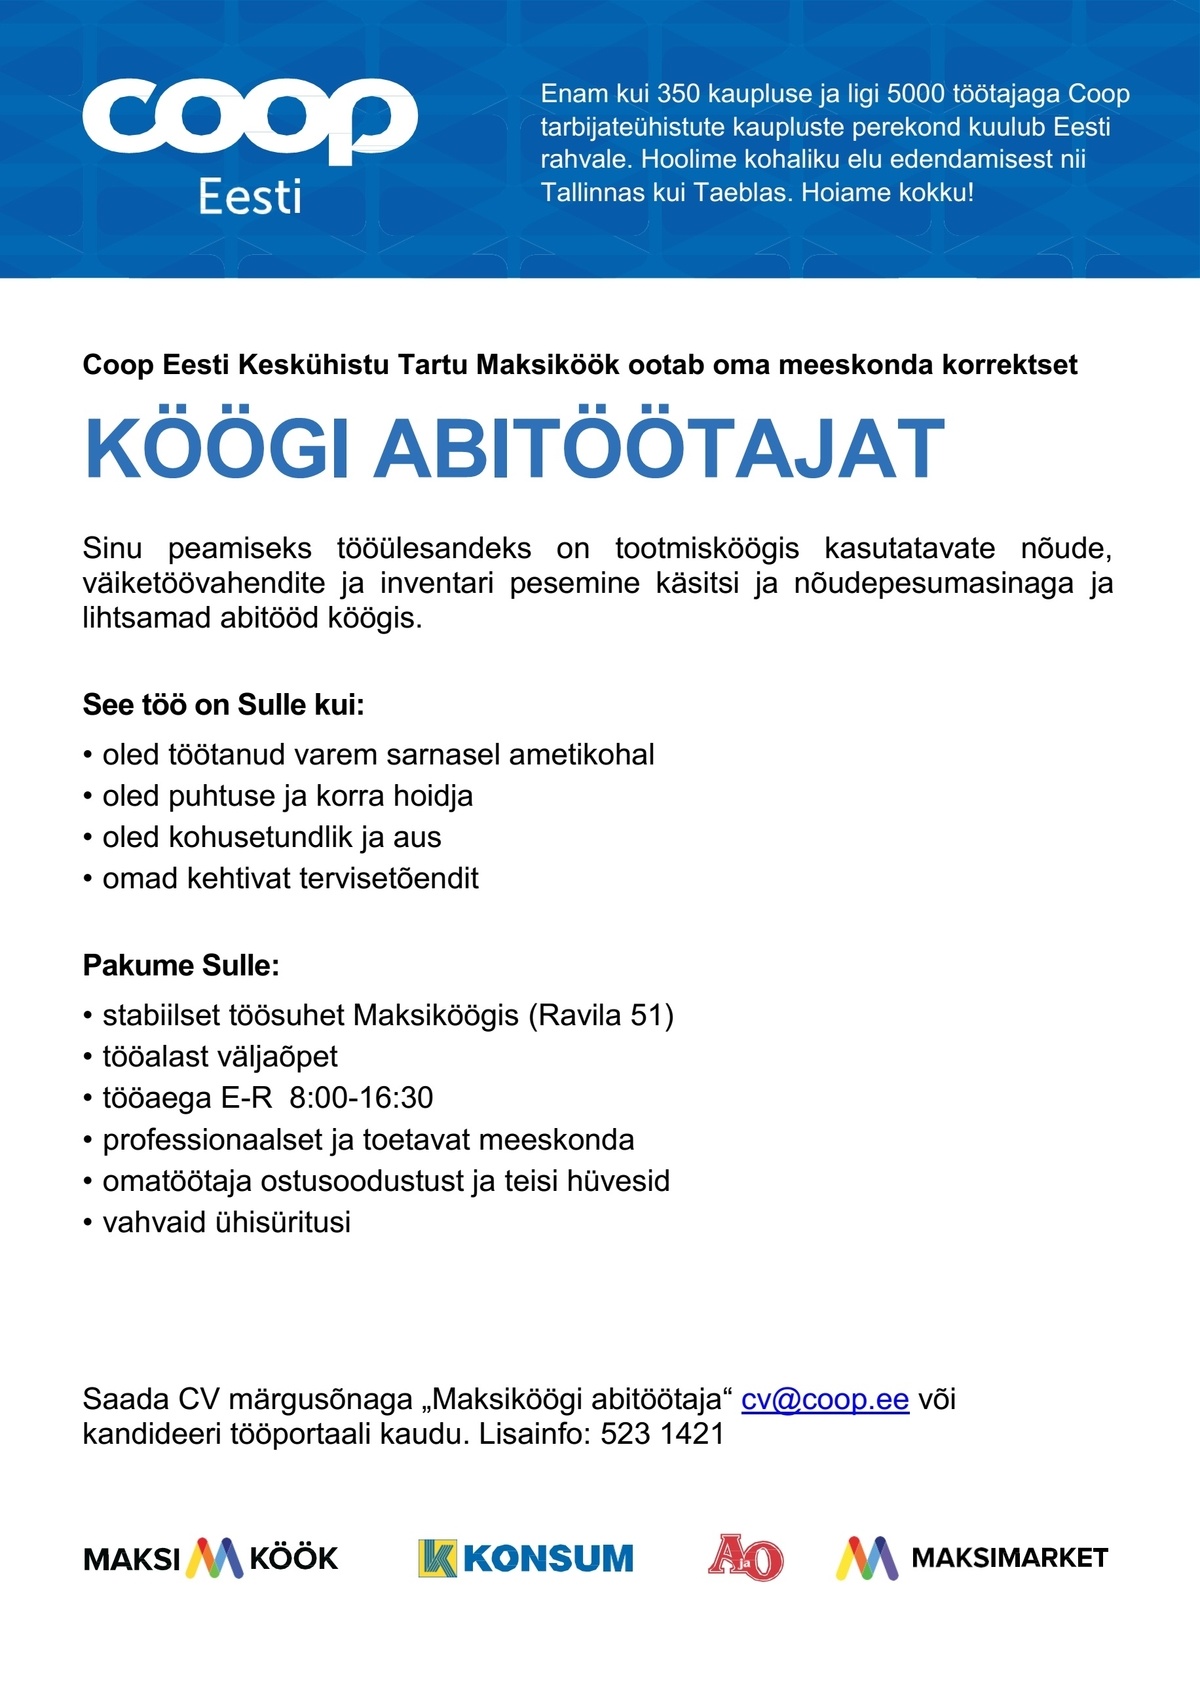 Coop Eesti Keskühistu Köögi abitöötaja (Maksiköök)